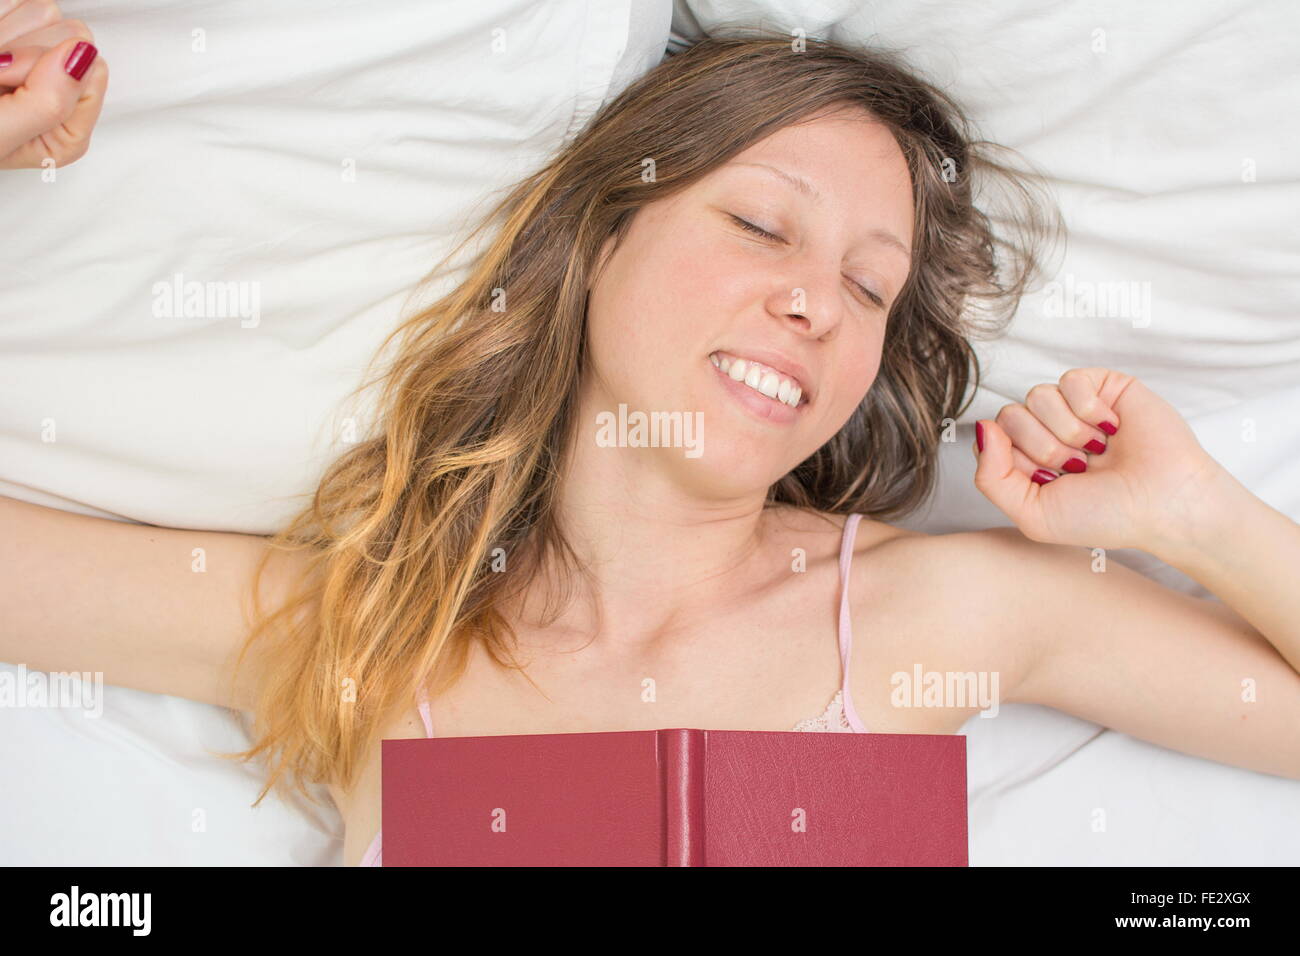 Jeune fille endormie se réveiller avec un livre sur sa poitrine Banque D'Images